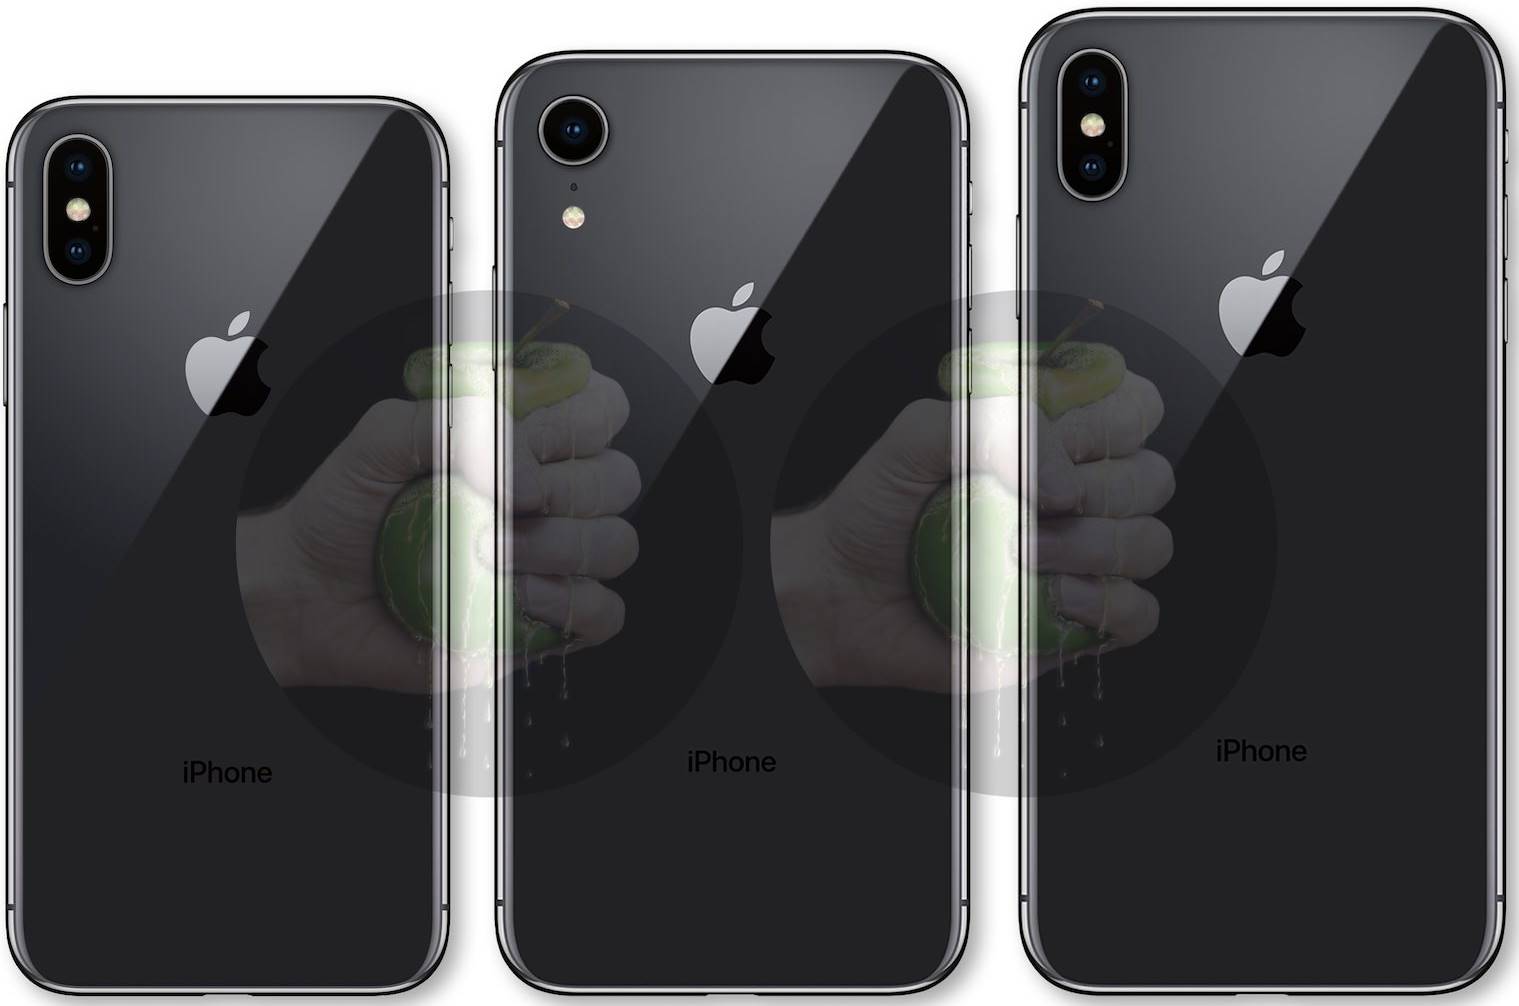 iPhone 9, iPhone X 2018 and iPhone X Plus design 1